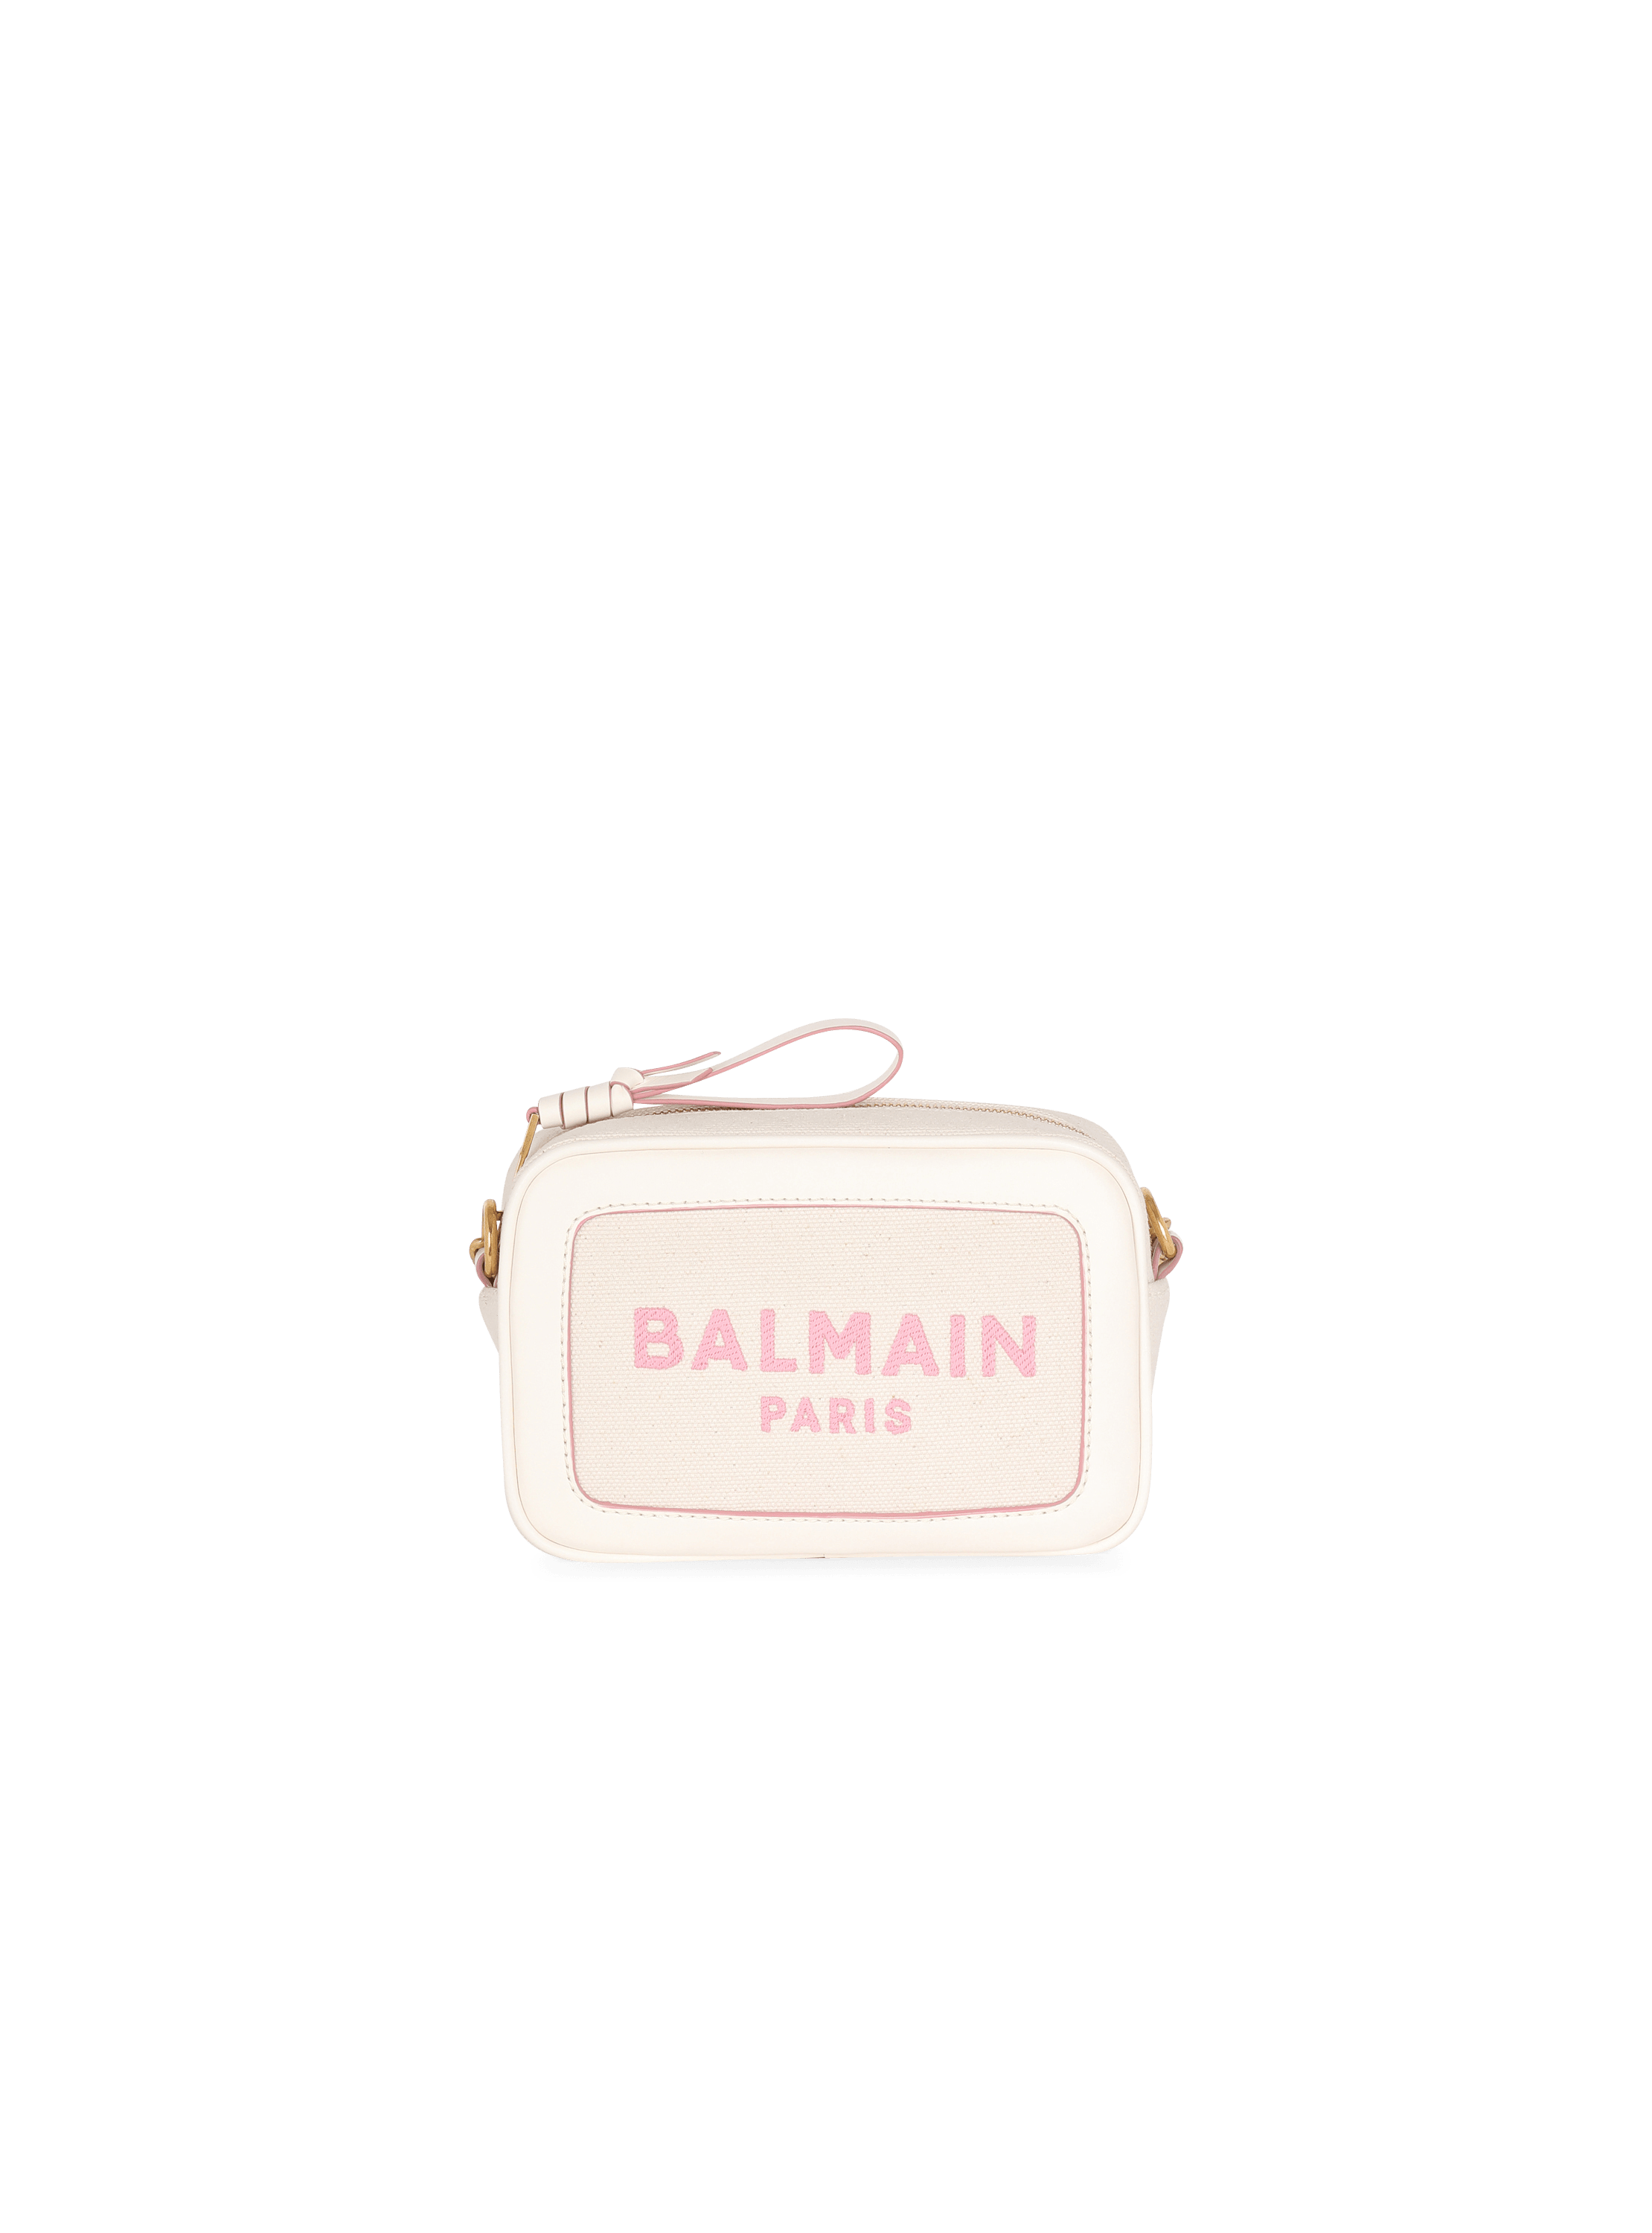 Balmain Canvas B-Army Clutch Bag